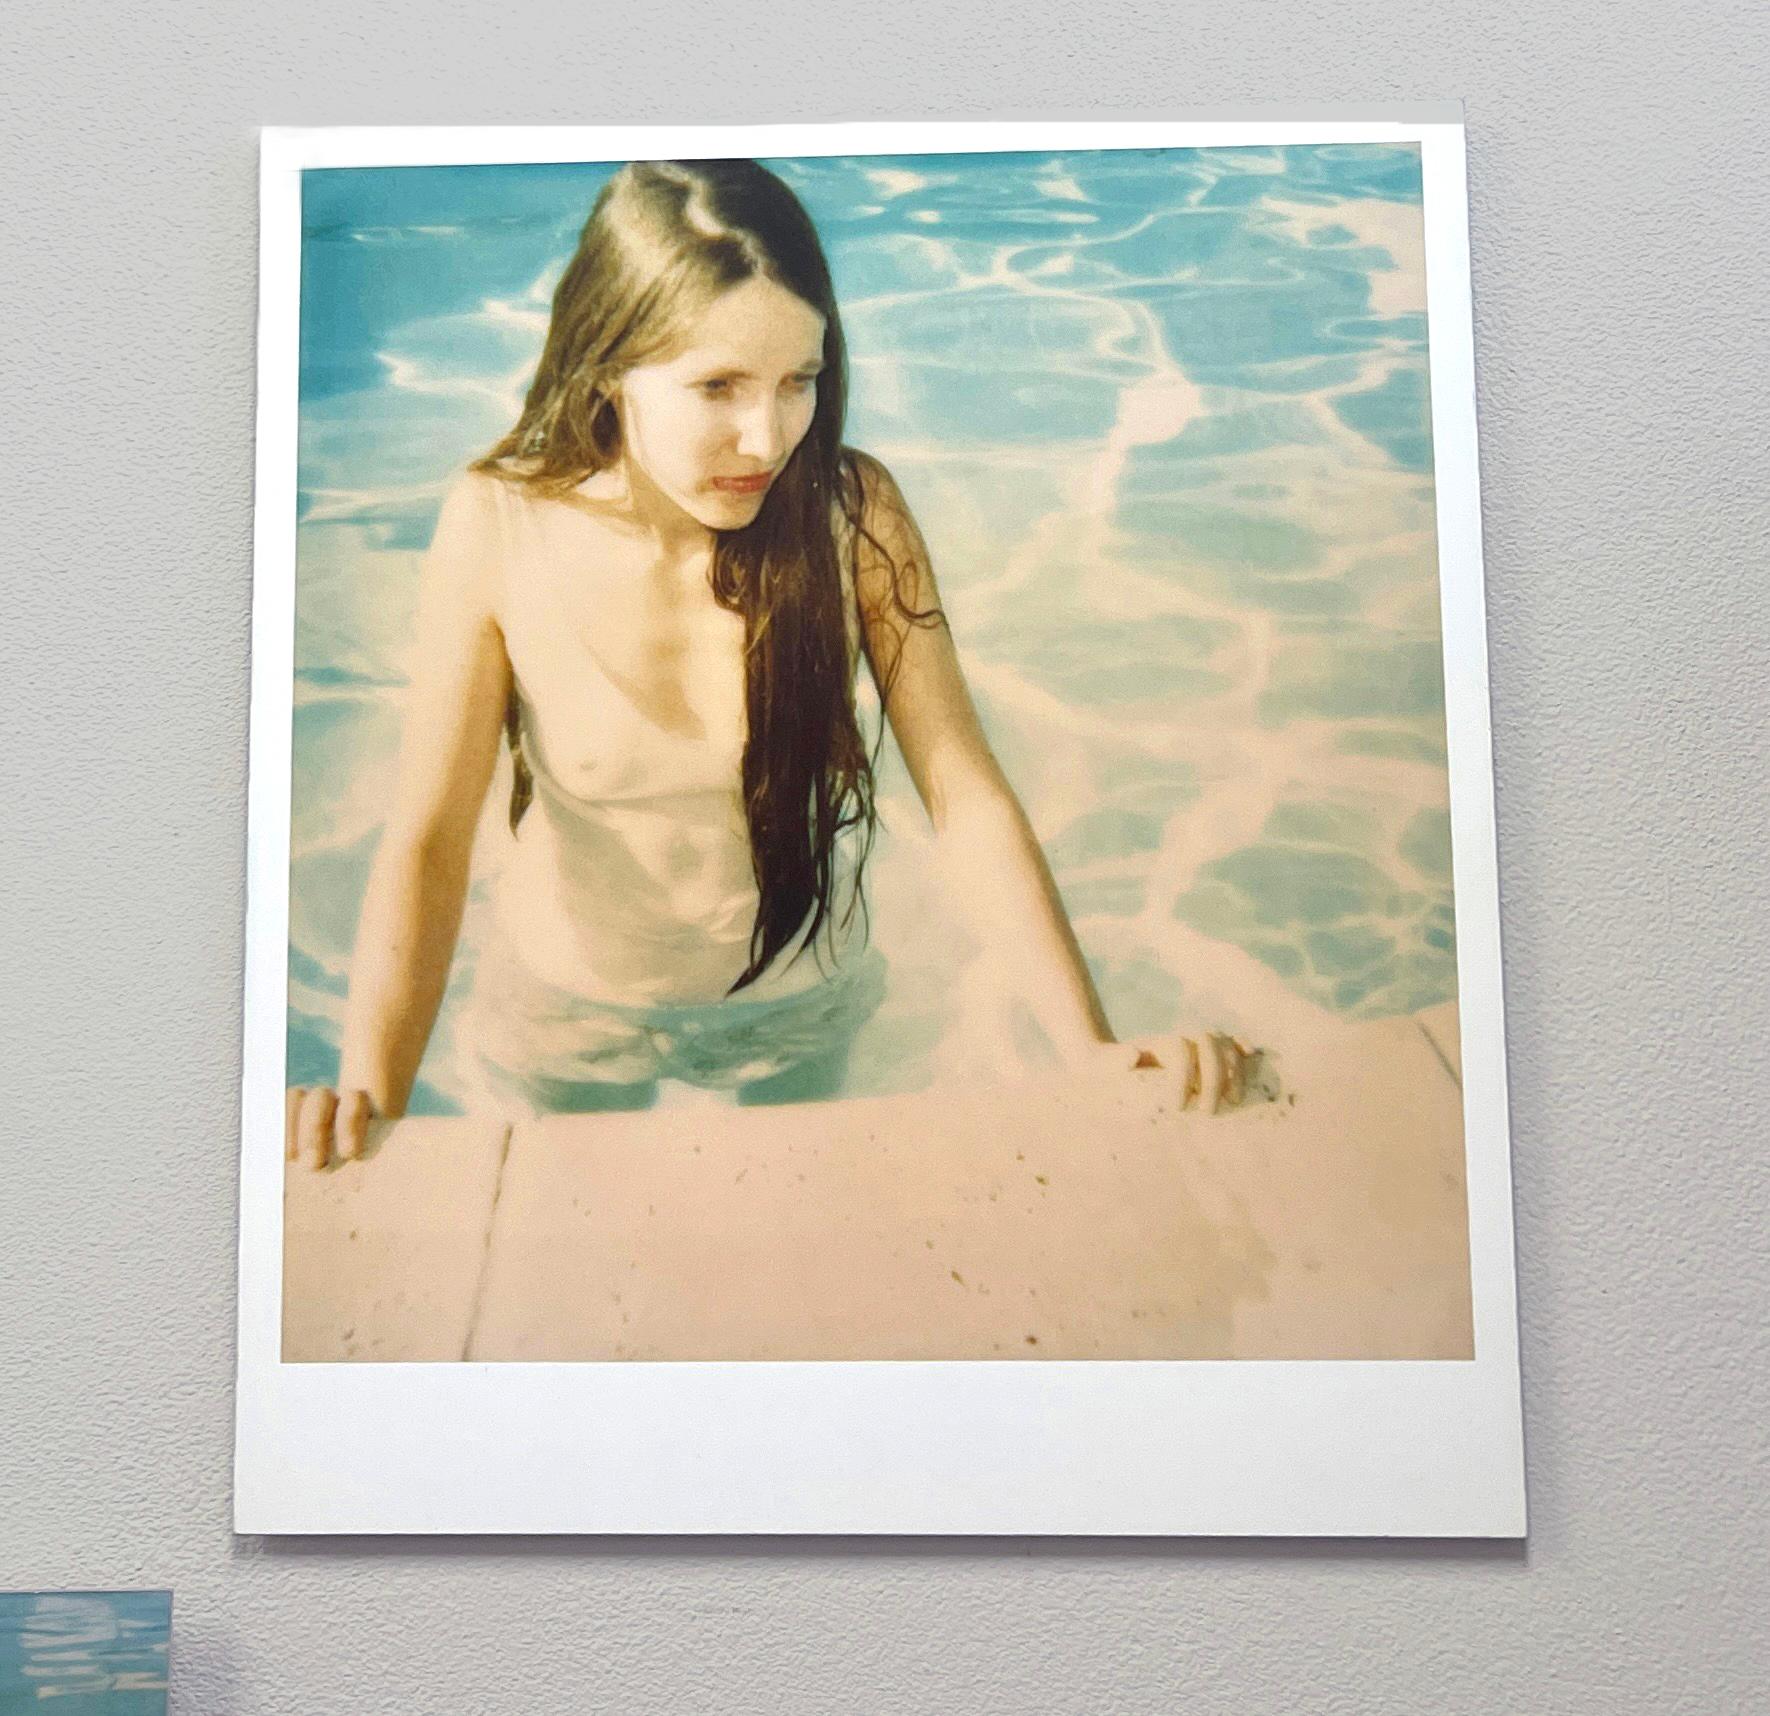 Poolside (29 Palms, CA) - montiert - Contemporary, 21. Jahrhundert, Polaroid, Frau – Photograph von Stefanie Schneider